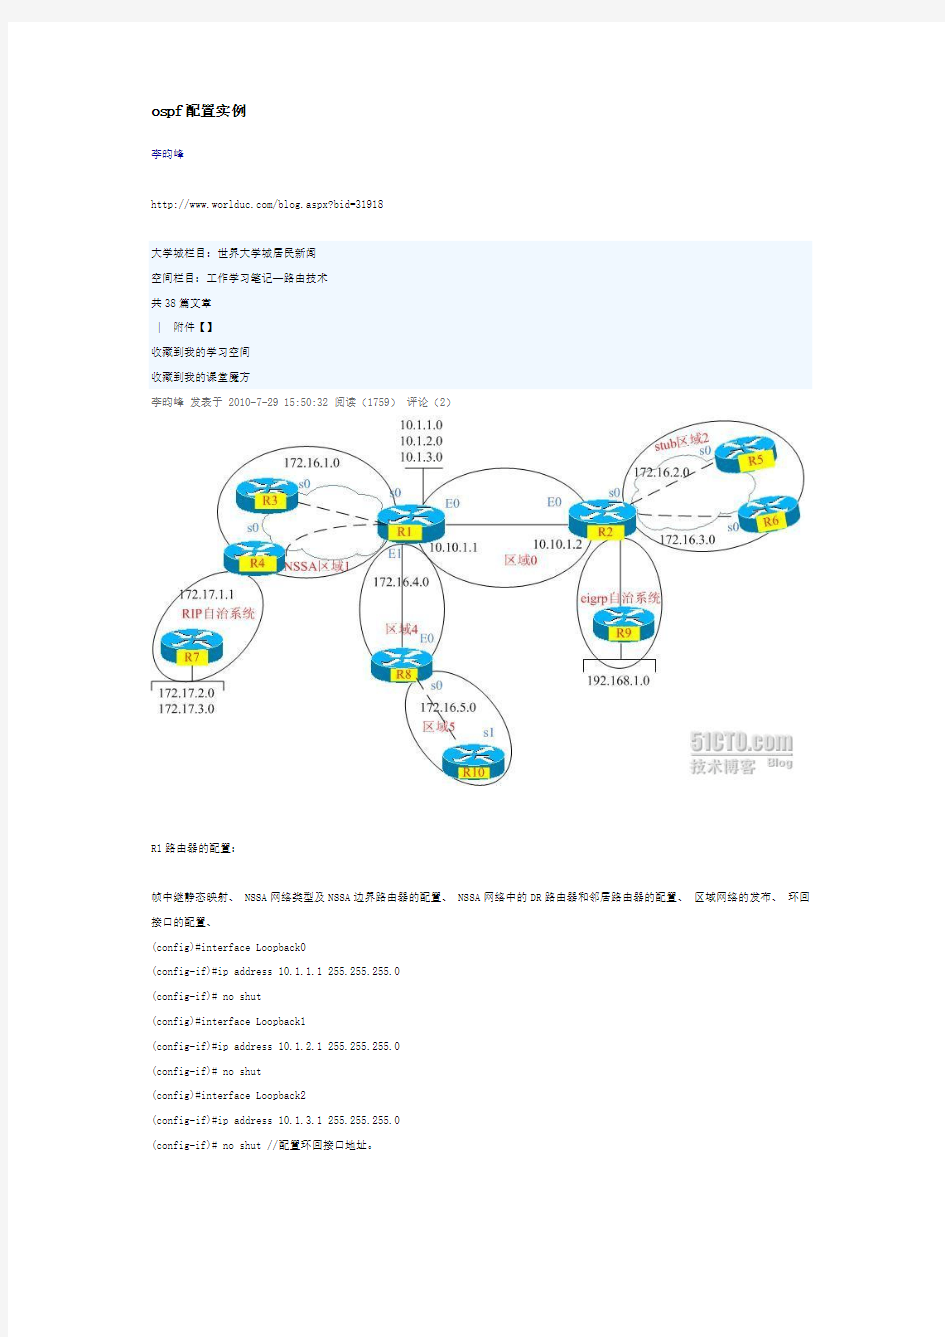 OSPF配置实例